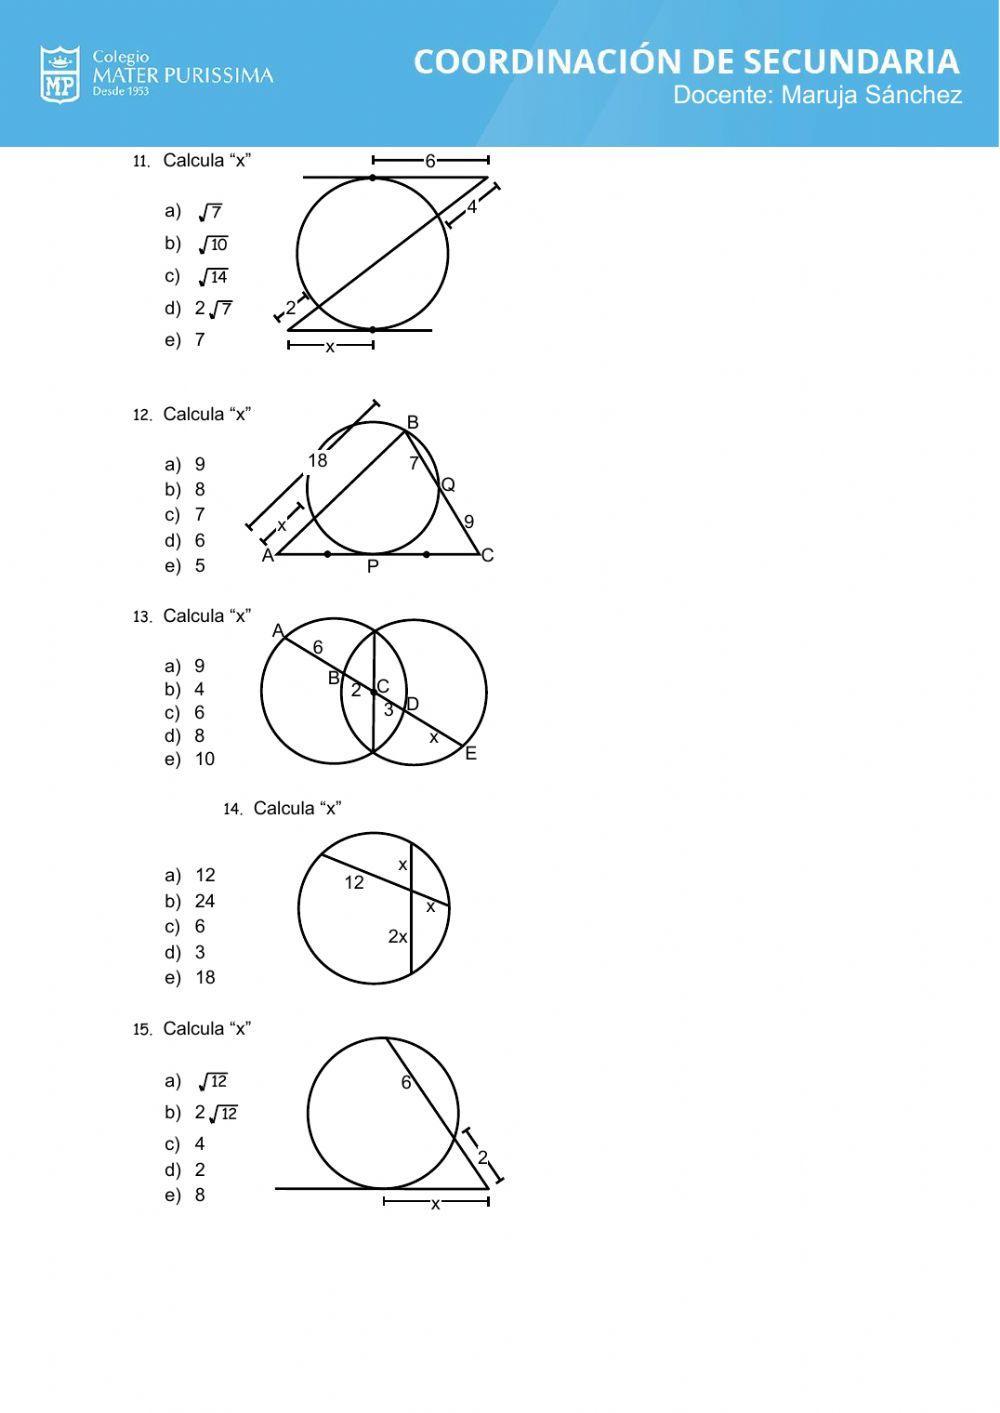 Relaciones métricas en la circunferencia